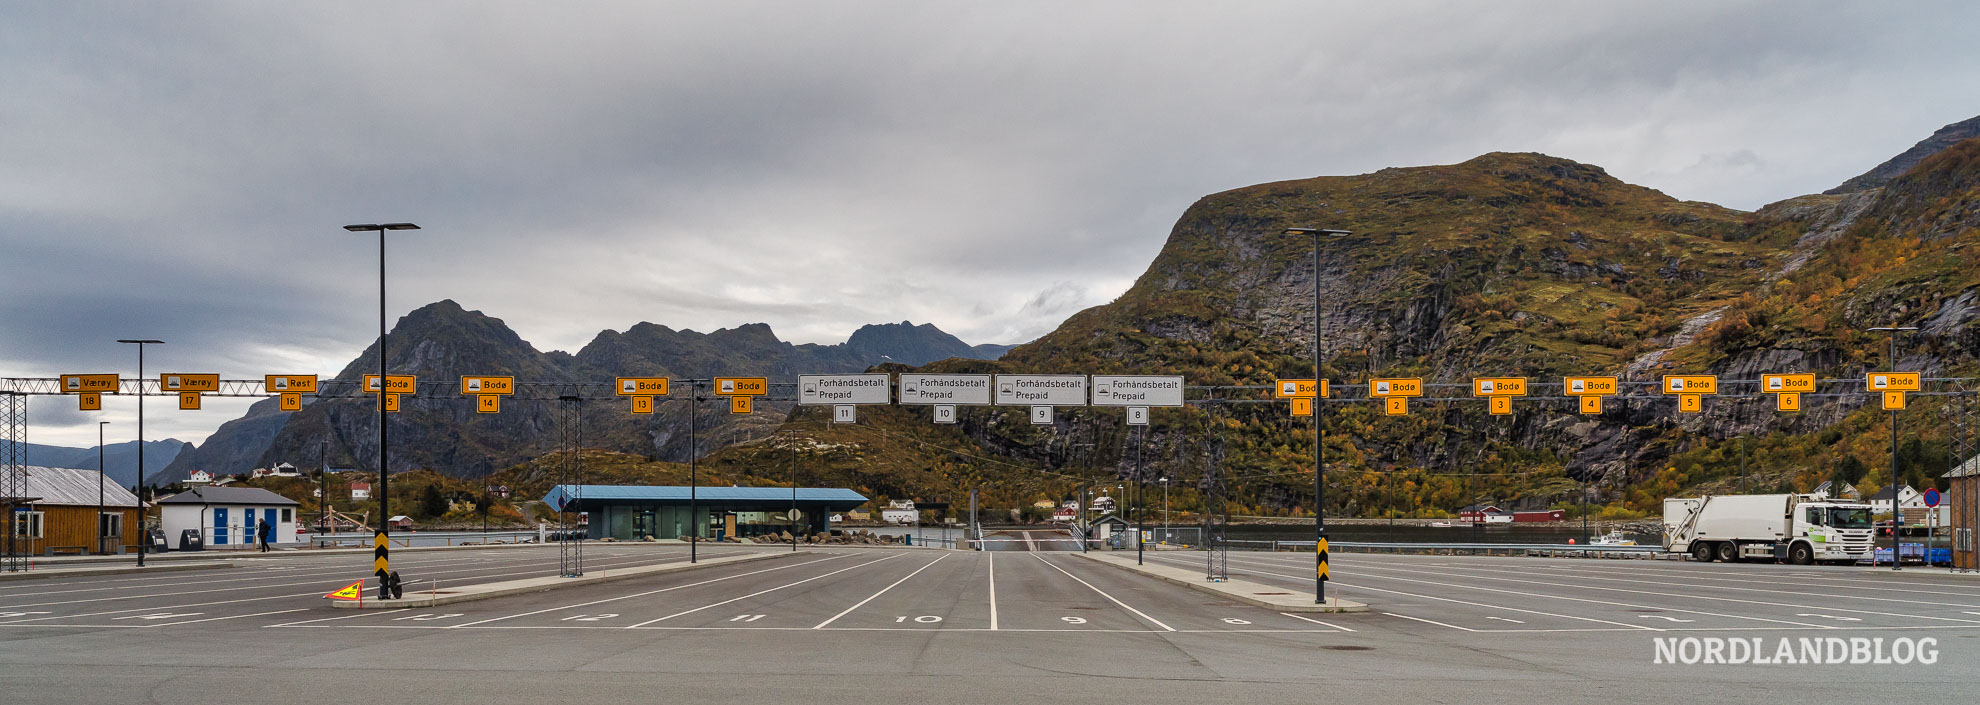 Fährhafen Moskenes Norwegen Anreise auf die Lofoten